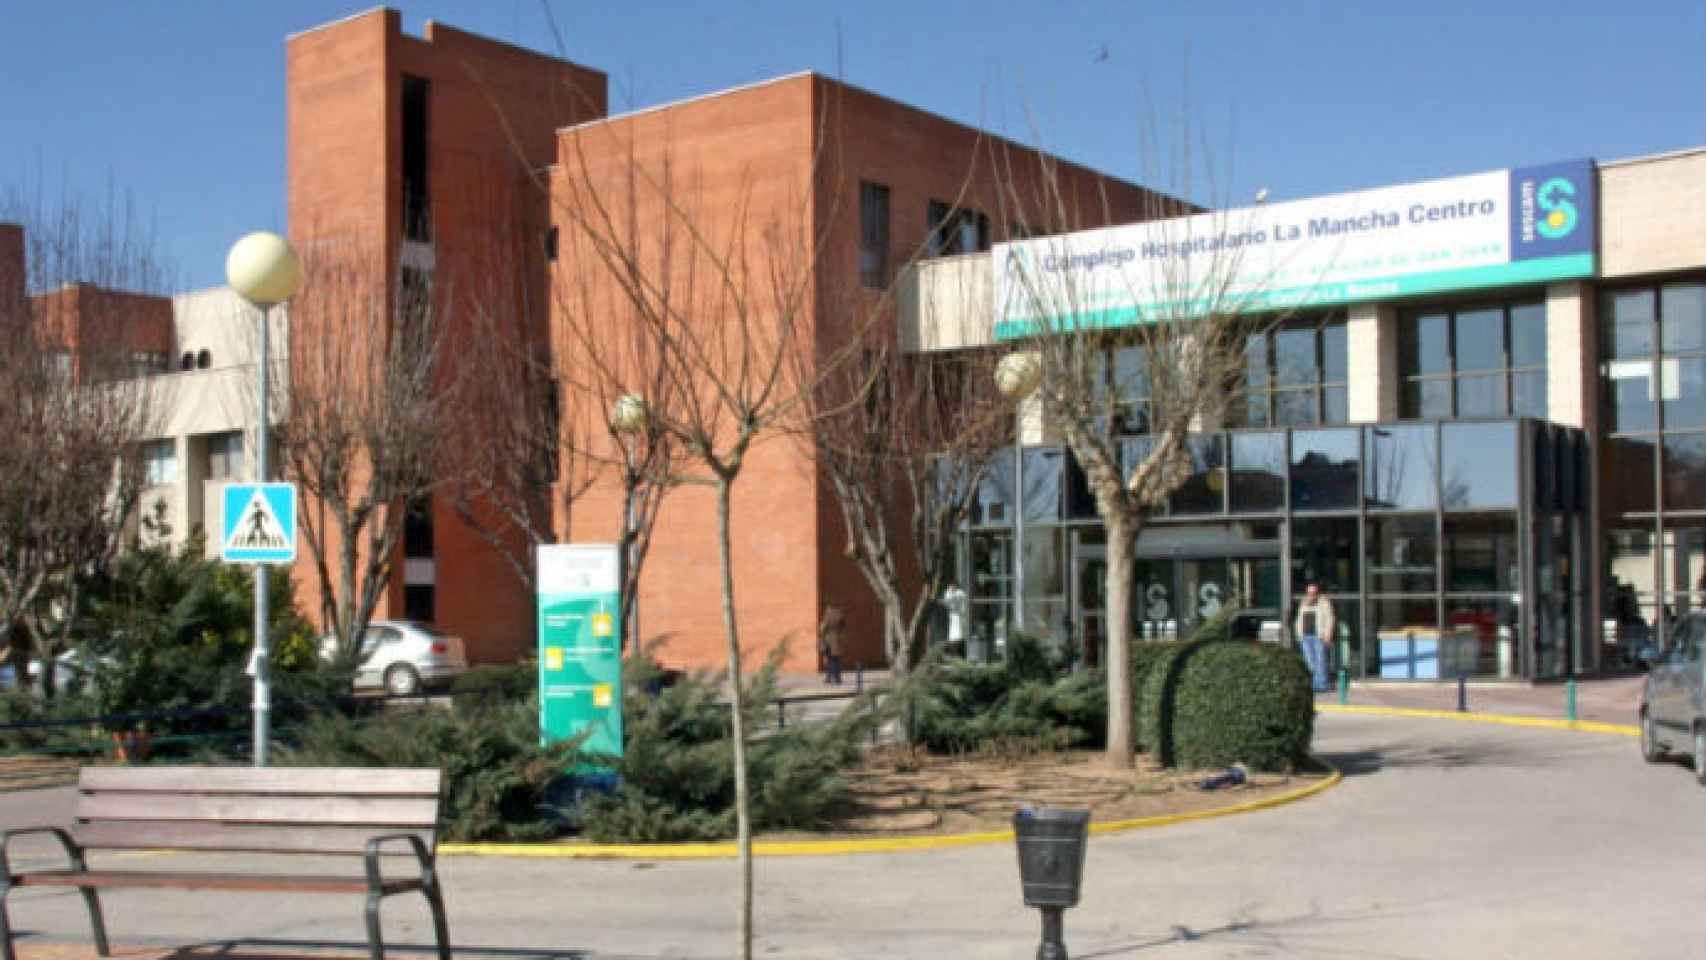 El trabajador herido ha sido trasladado en estado grave al hospital La Mancha Centro.